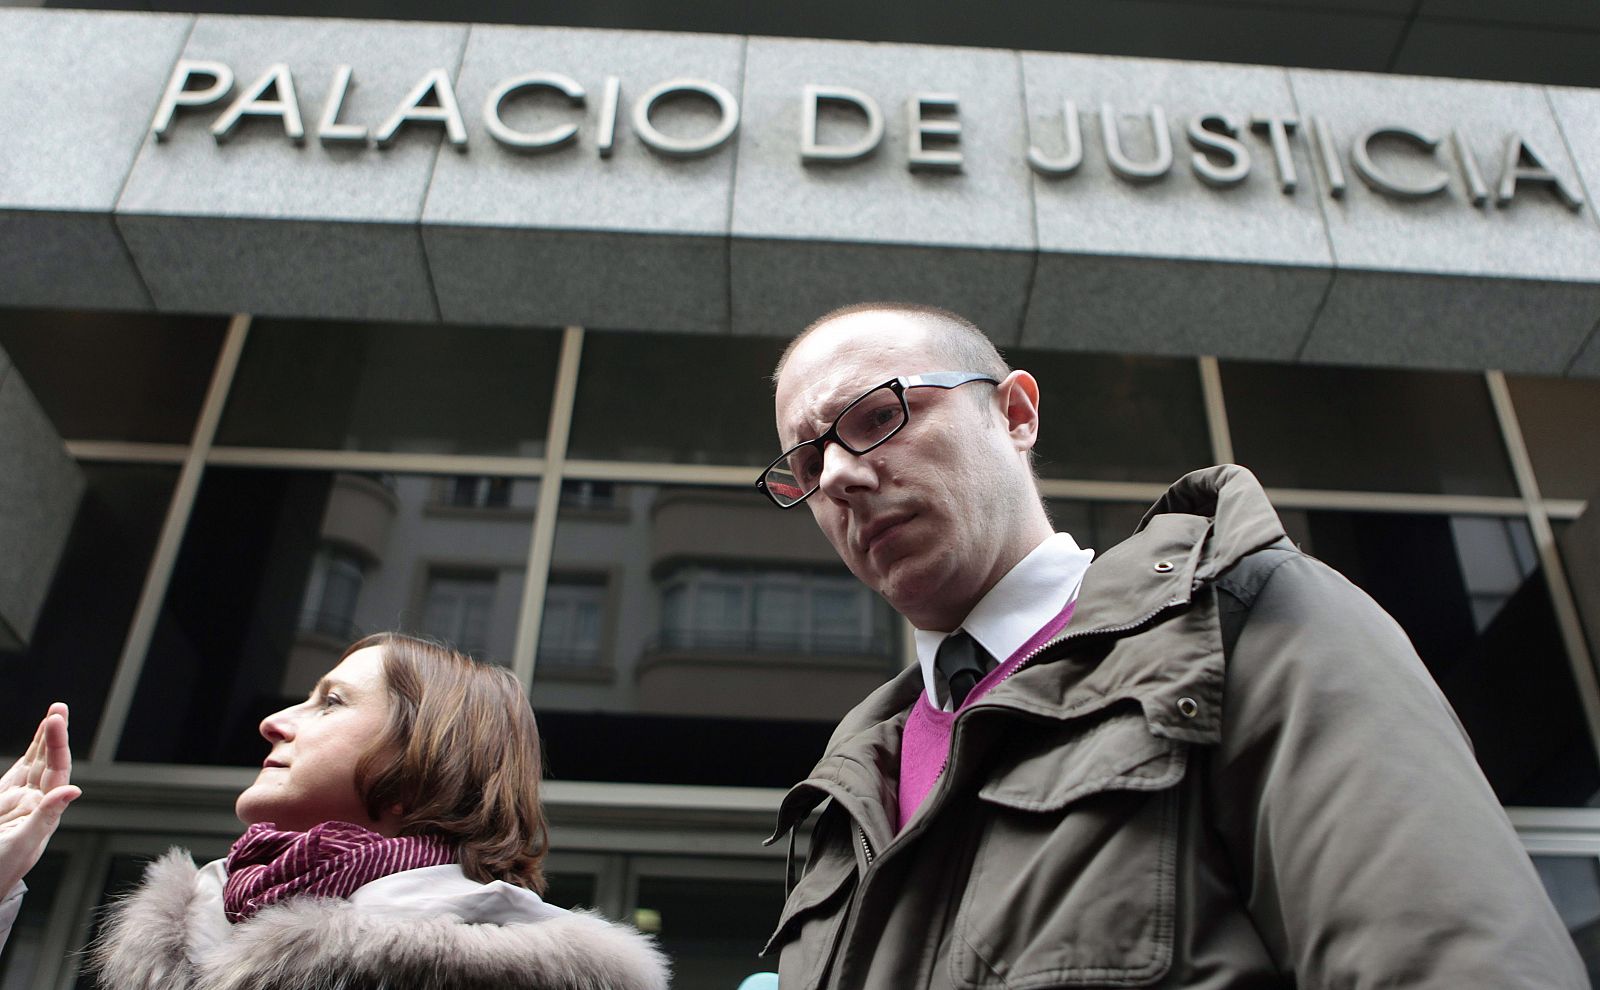 Francisco Javier Alvarado, técnico de la Asociación de Usuarios de Bancos, Cajas y Seguros (Adicae), sale del palacio de Justicia de Bilbao con la sentencia del juez Bermúdez